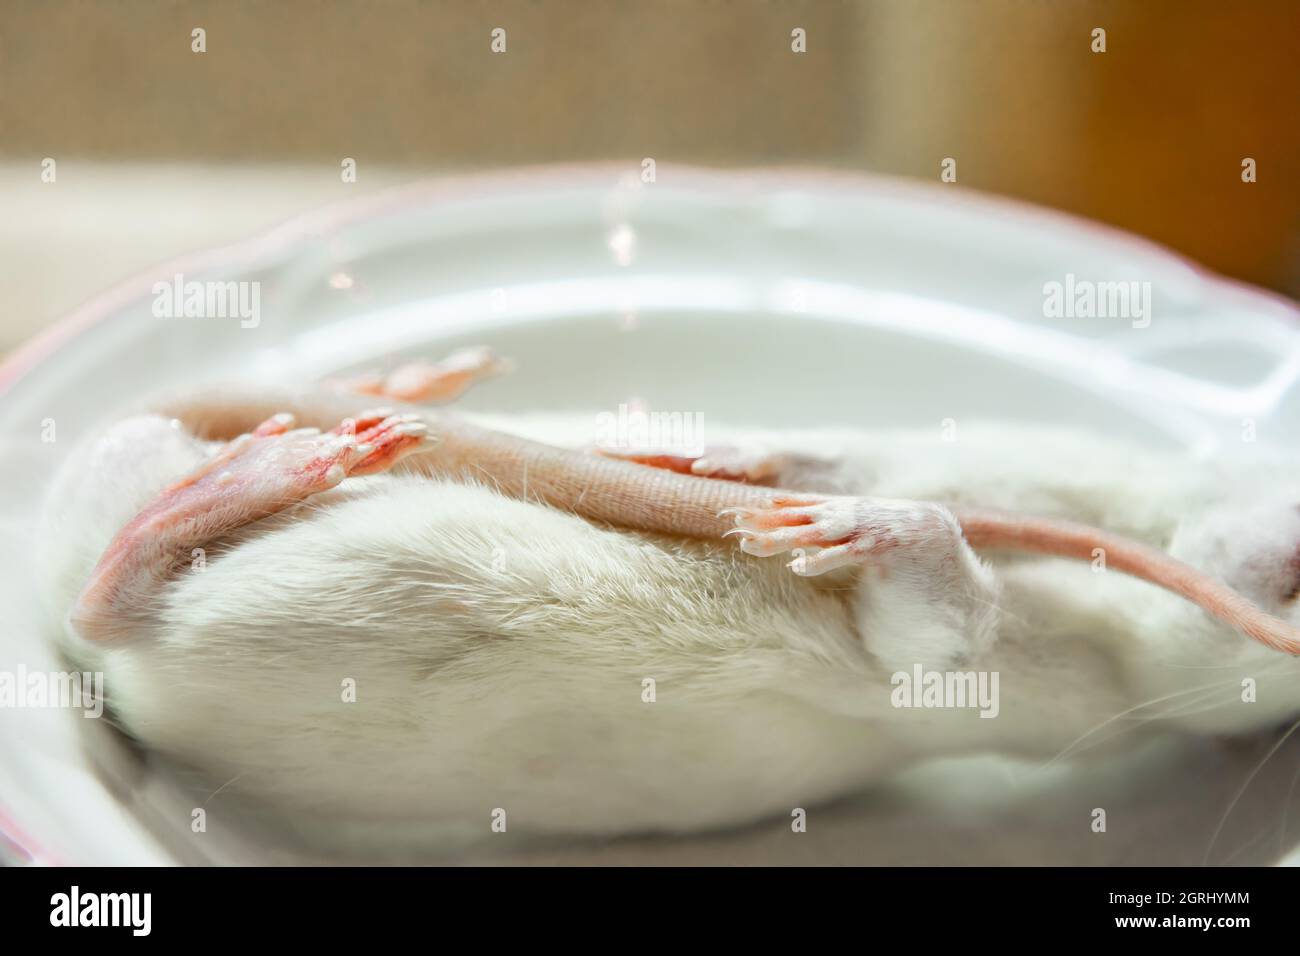 Eine Nahaufnahme einer Seitenpose einer toten Ratte mit weißem Fell, herangezoomt auf Krallen, bereit, auf einem Teller als Futter für die Tierschlange serviert zu werden. Stockfoto